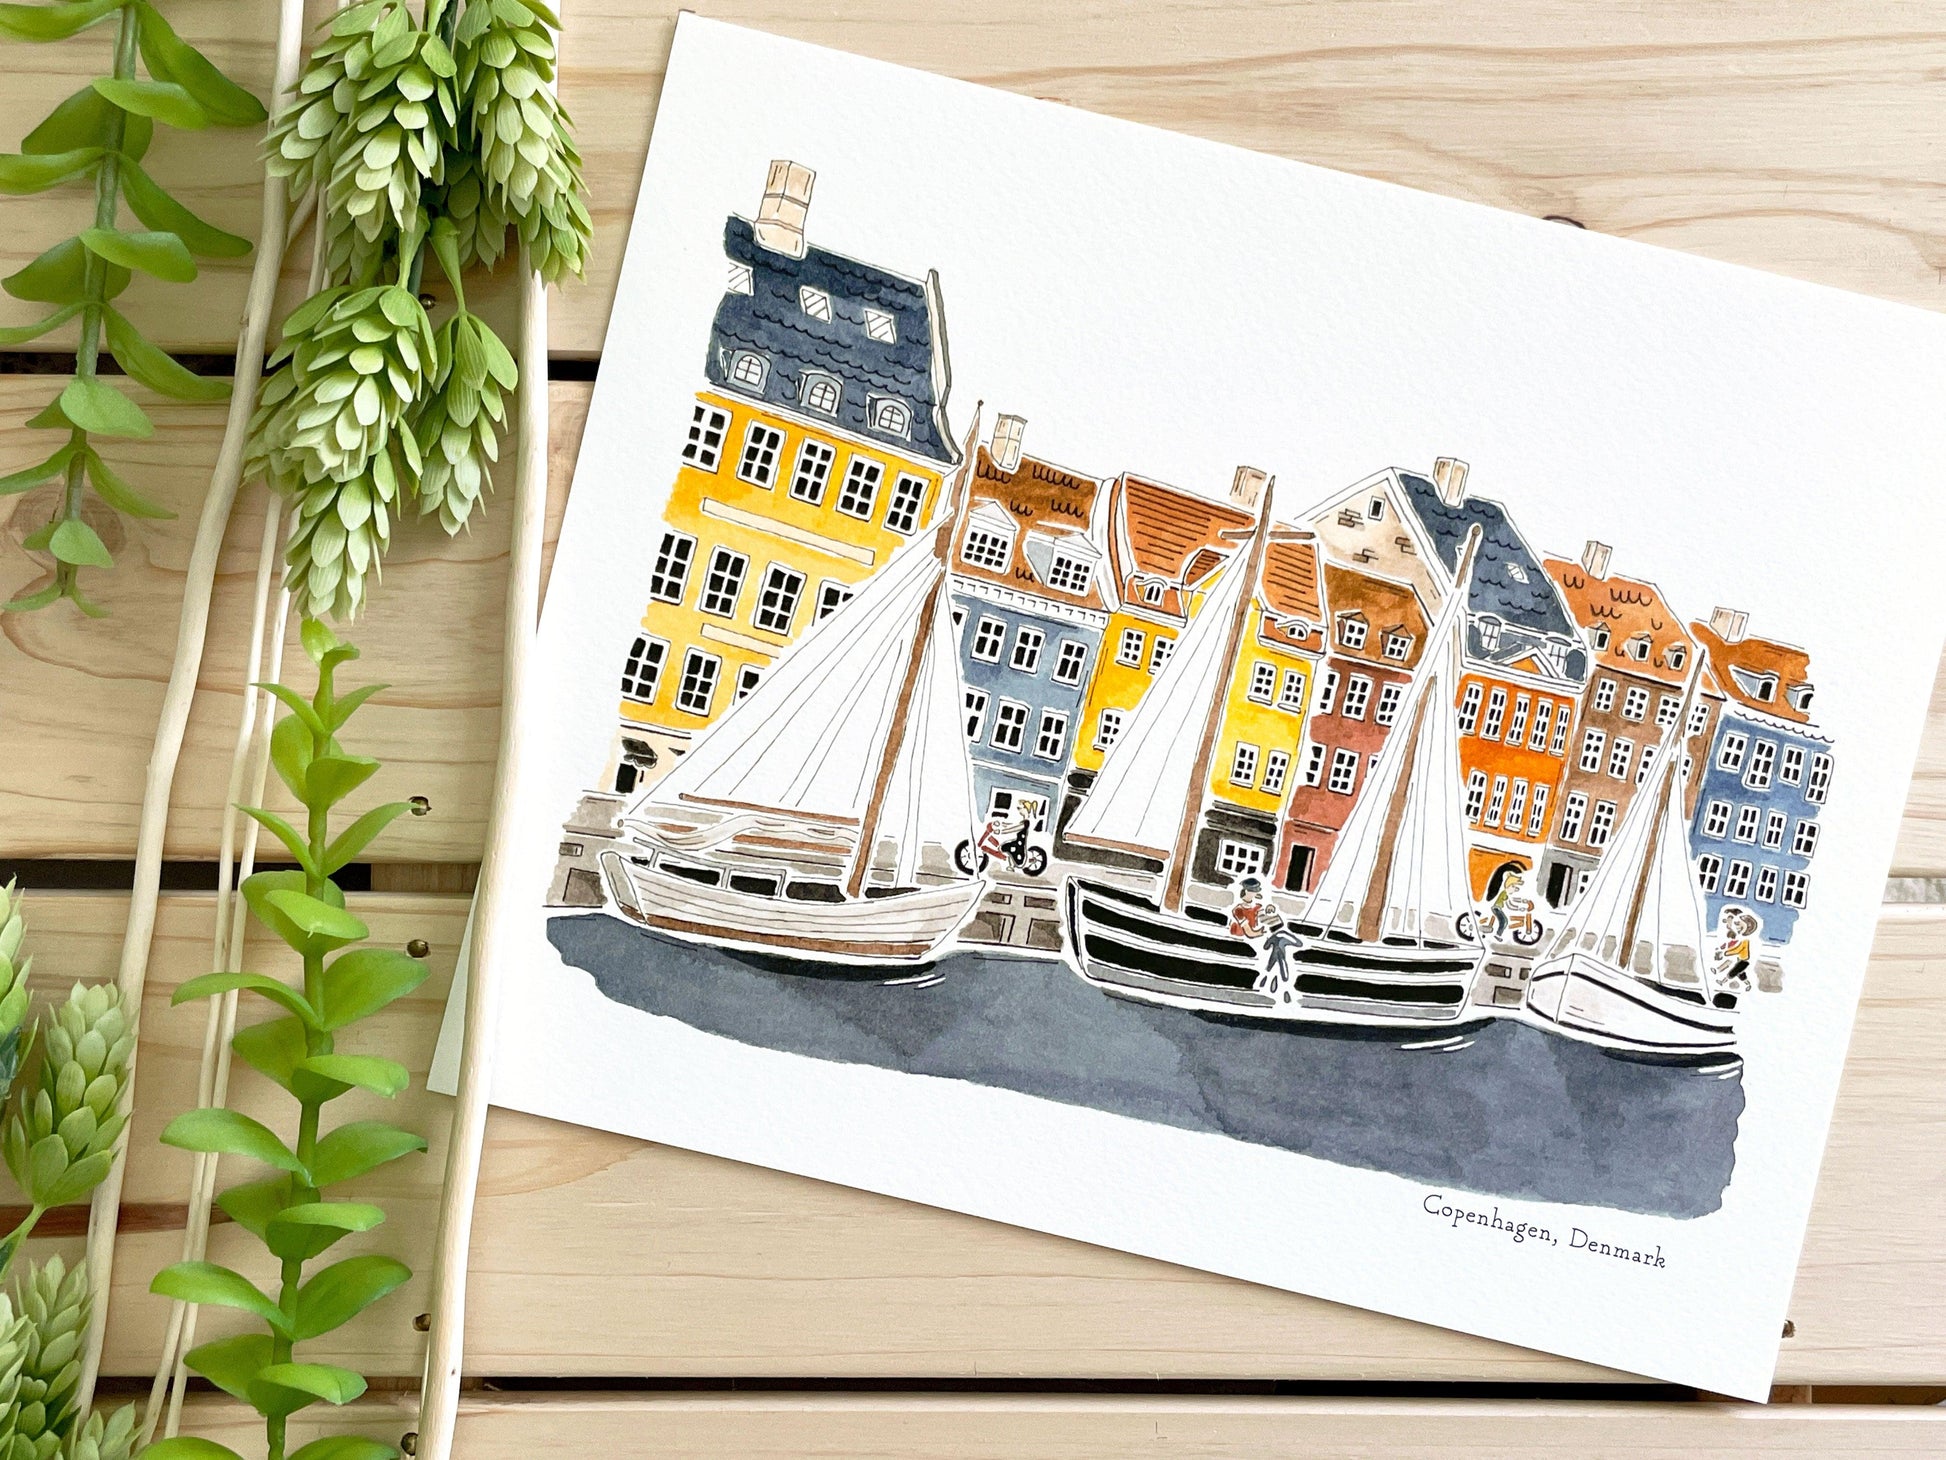 Copenhagen (Denmark) 8x10 Watercolor Print – Design